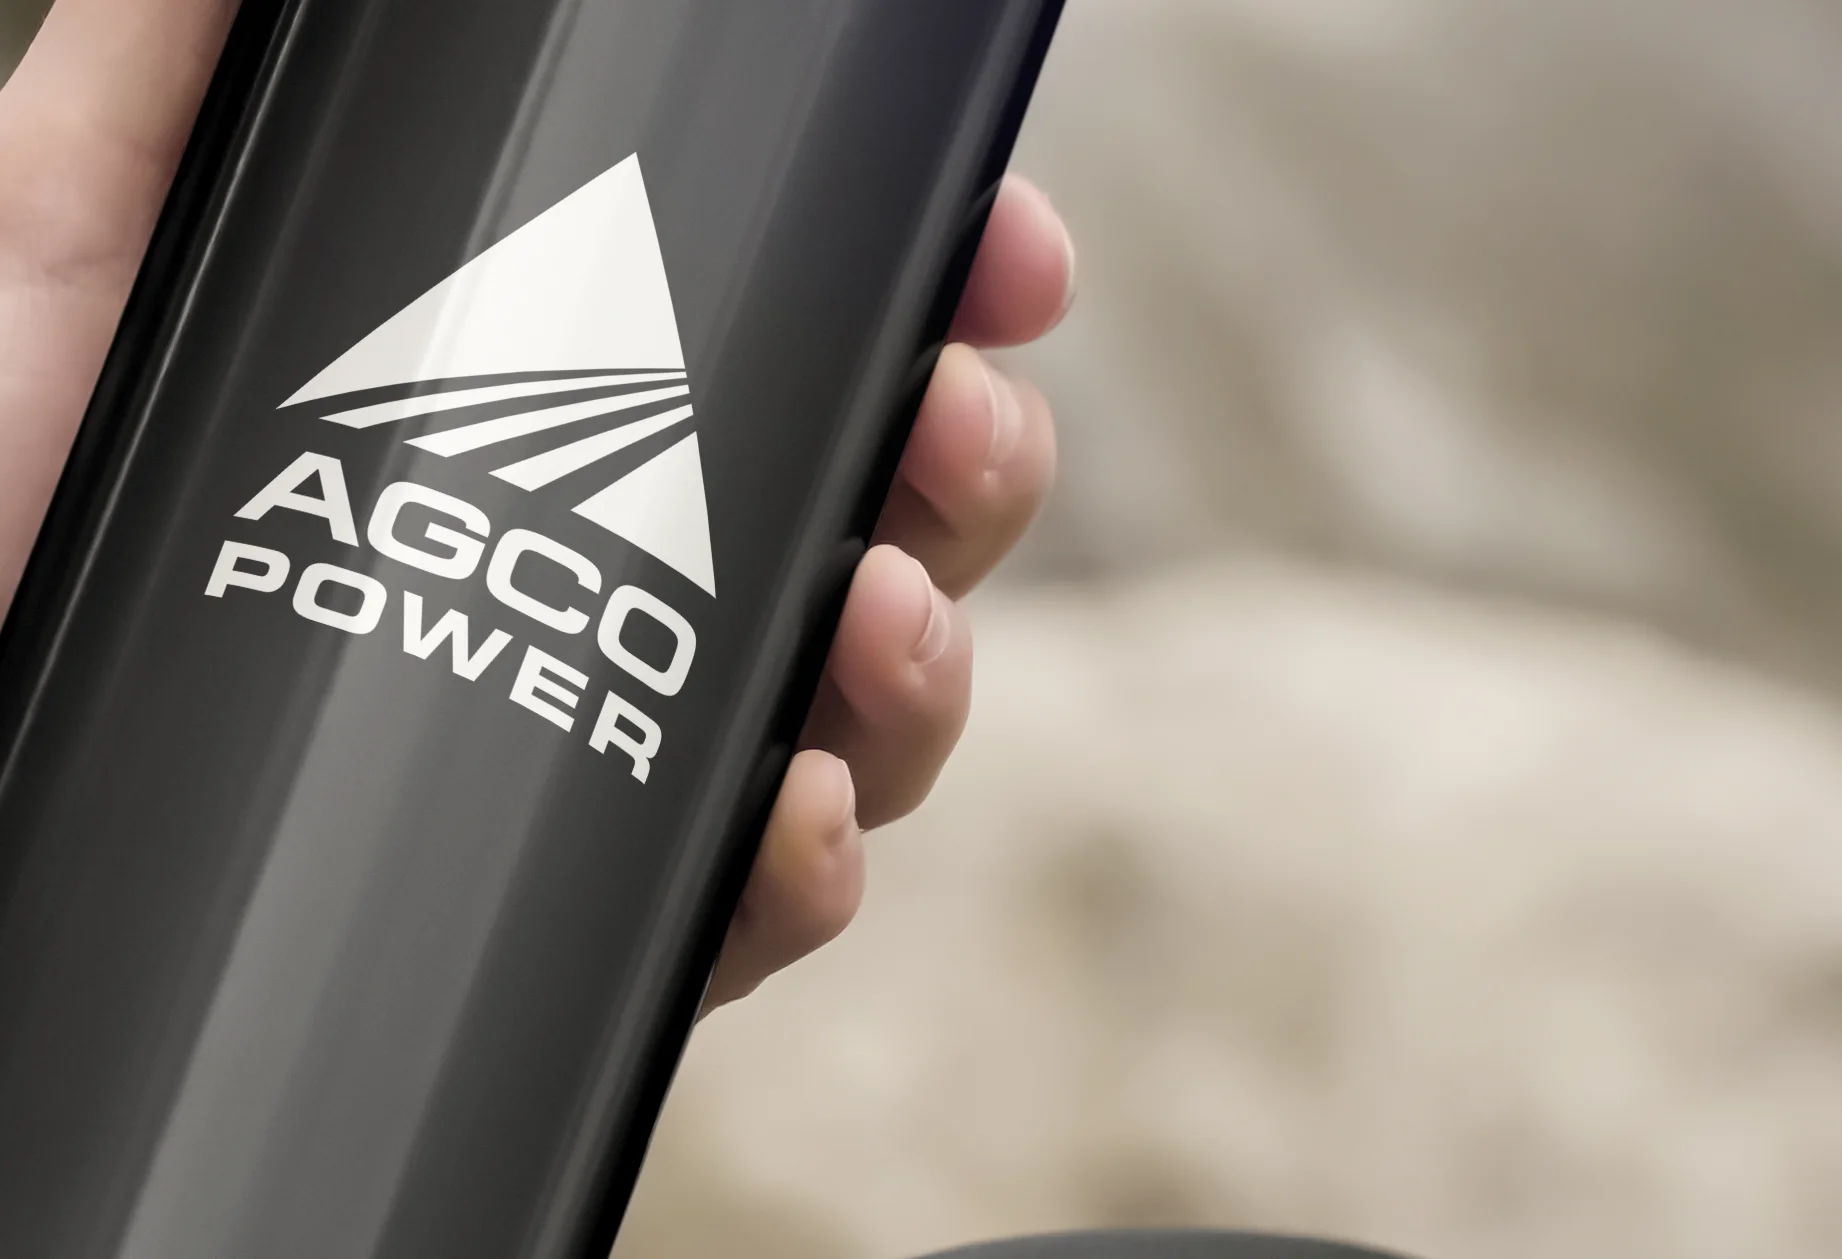 agco-power-metal-bottle-detail